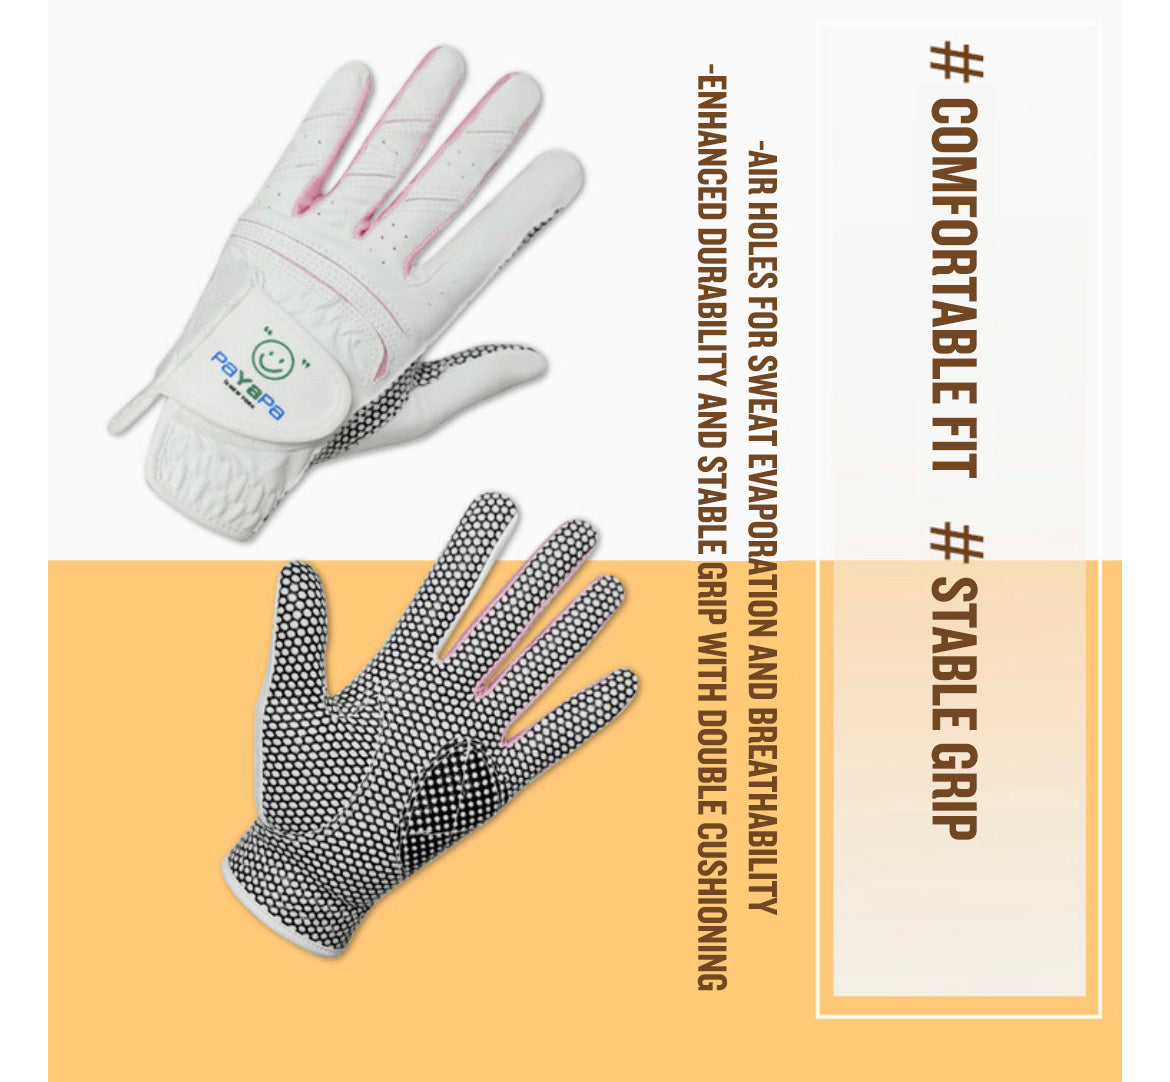 [Payapa] Samsun Golf Glove for Women